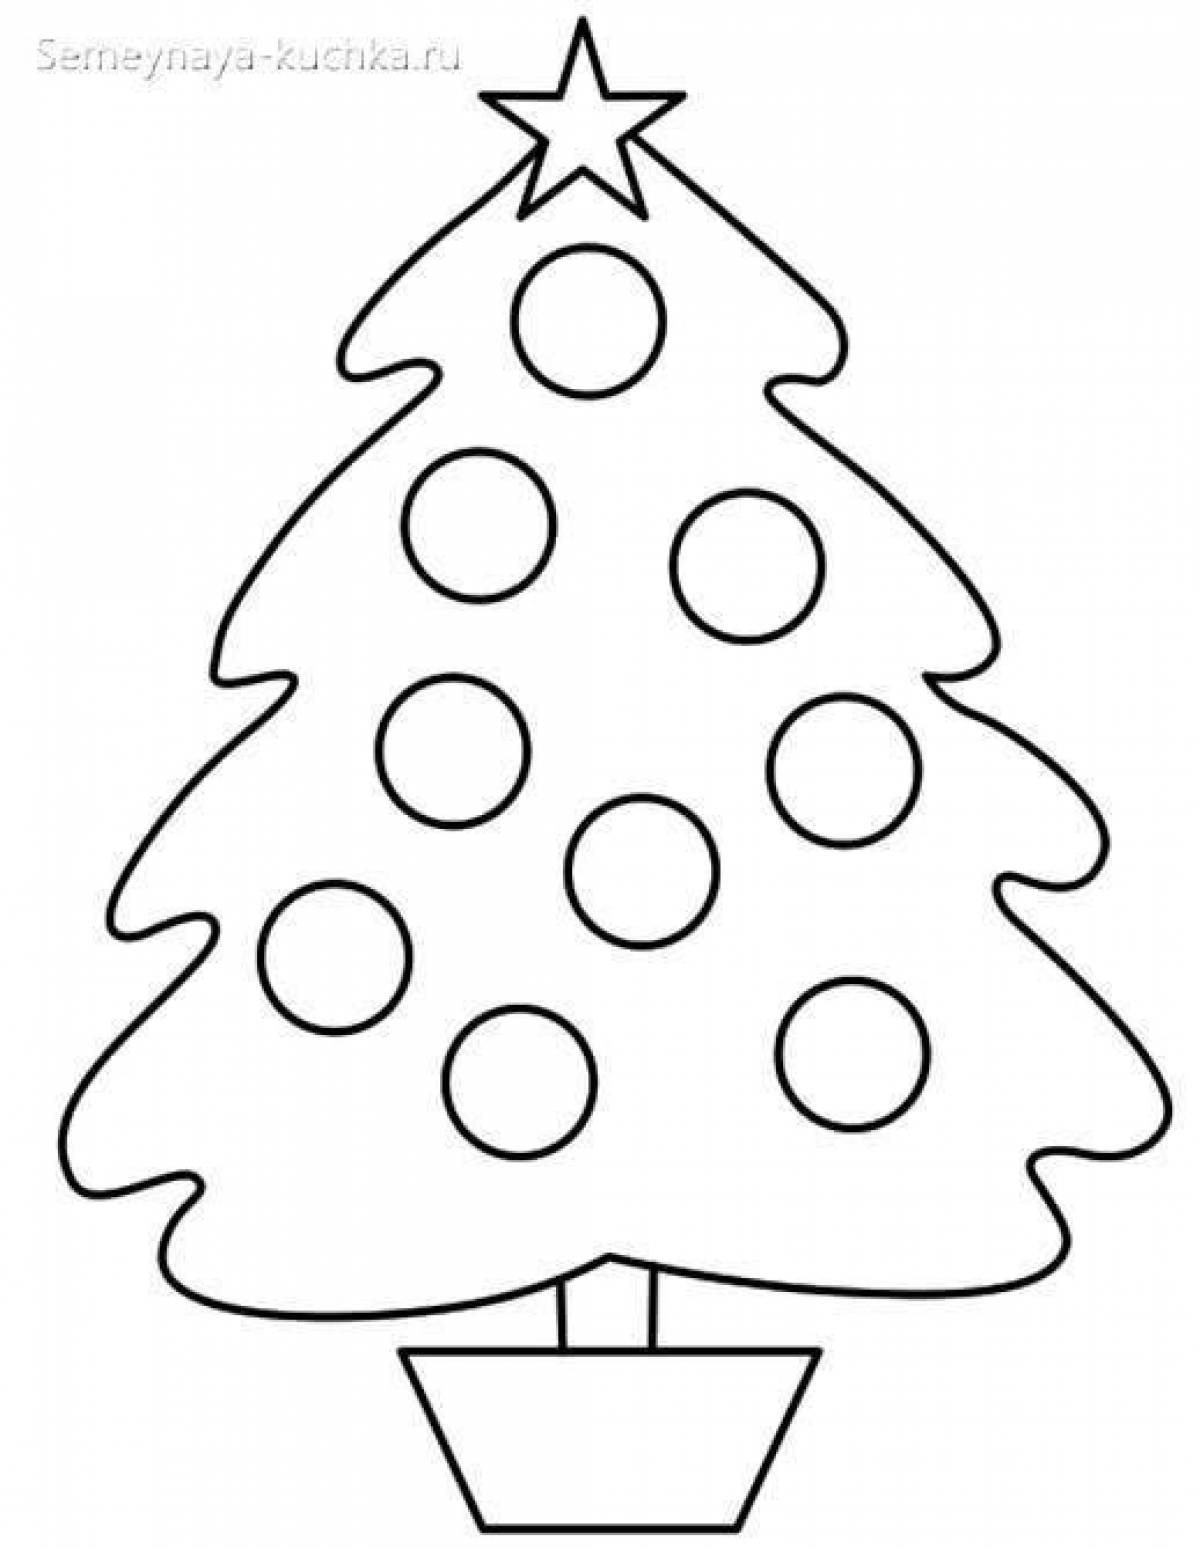 Праздничная раскраска рождественская елка с шарами